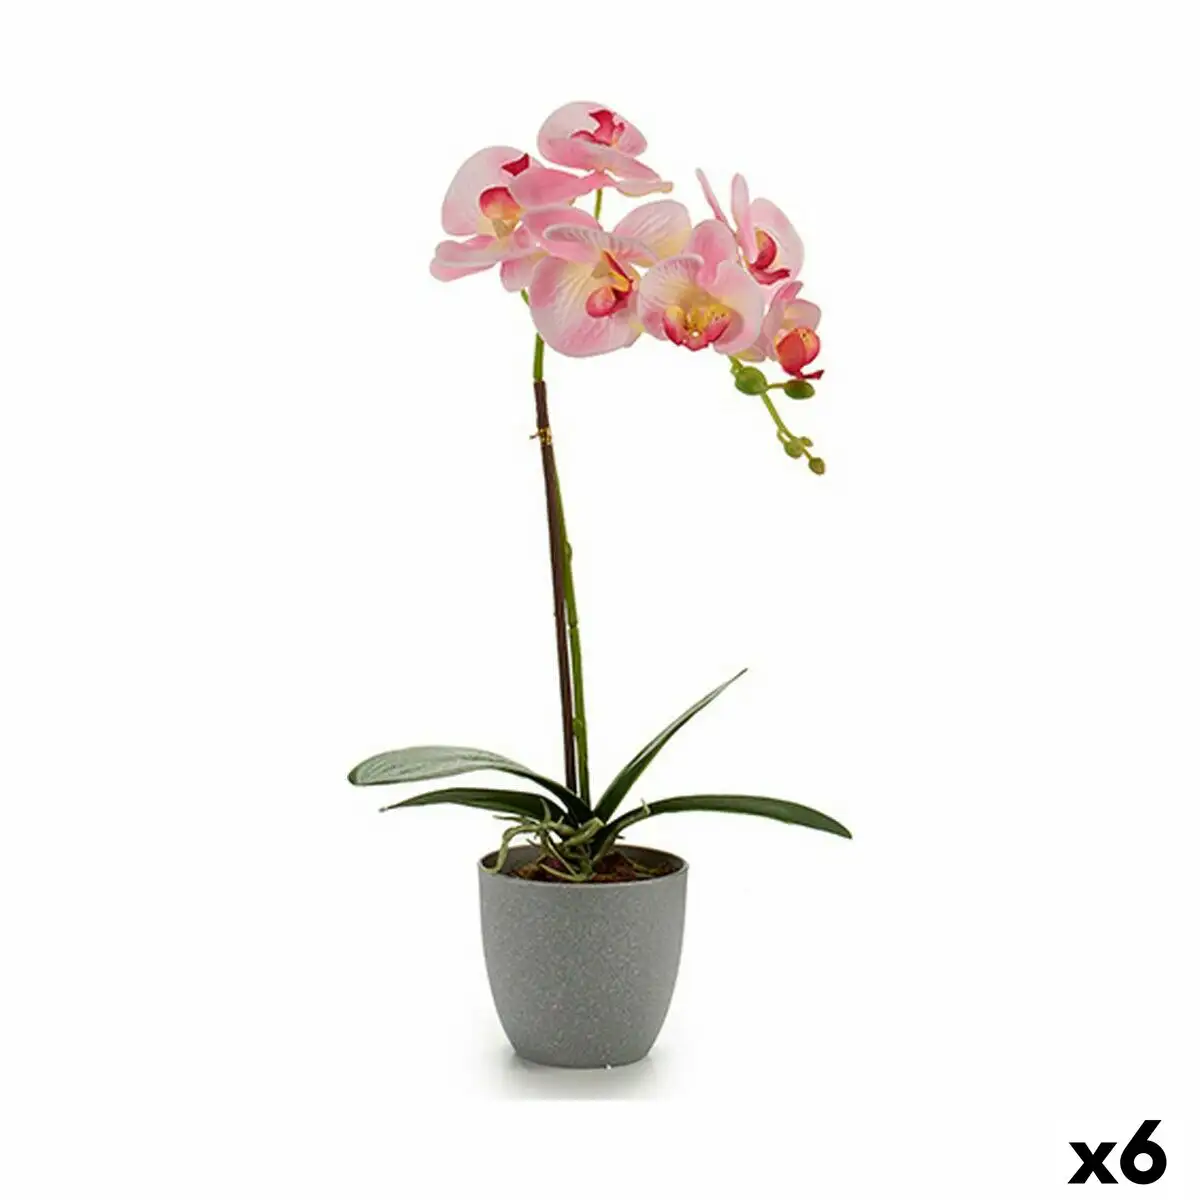 Plante decorative orchidee plastique 13 x 39 x 22 cm 6 unites _5571. DIAYTAR SENEGAL - Votre Passage Vers l'Excellence Shopping. Découvrez un catalogue en ligne qui offre une expérience d'achat exceptionnelle, avec des produits soigneusement sélectionnés pour satisfaire tous les goûts.